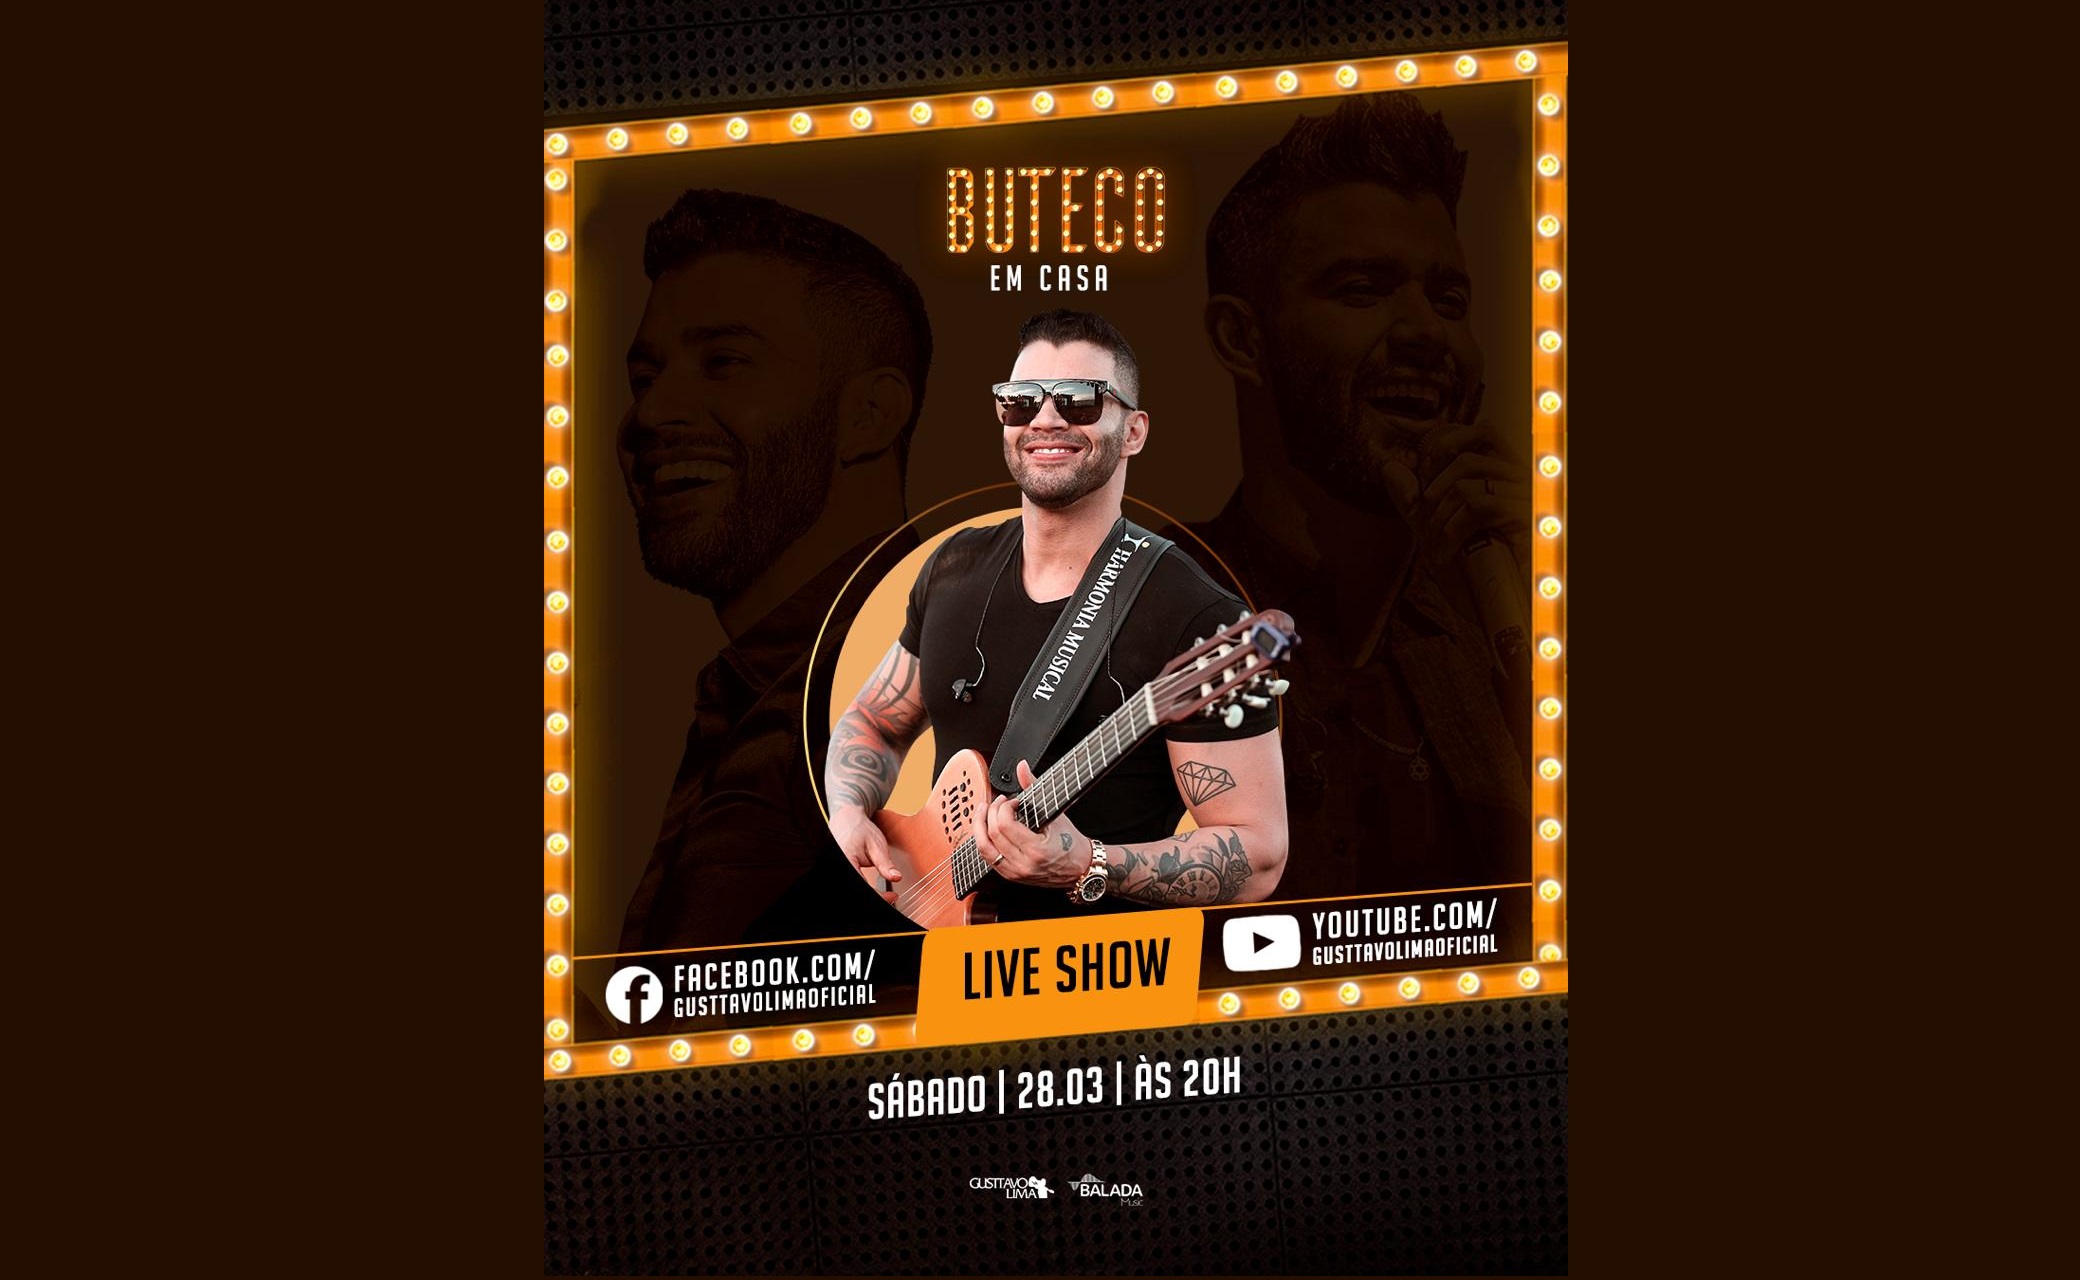 Gusttavo Lima realiza live show “Buteco em Casa” no YouTube e Facebook 41